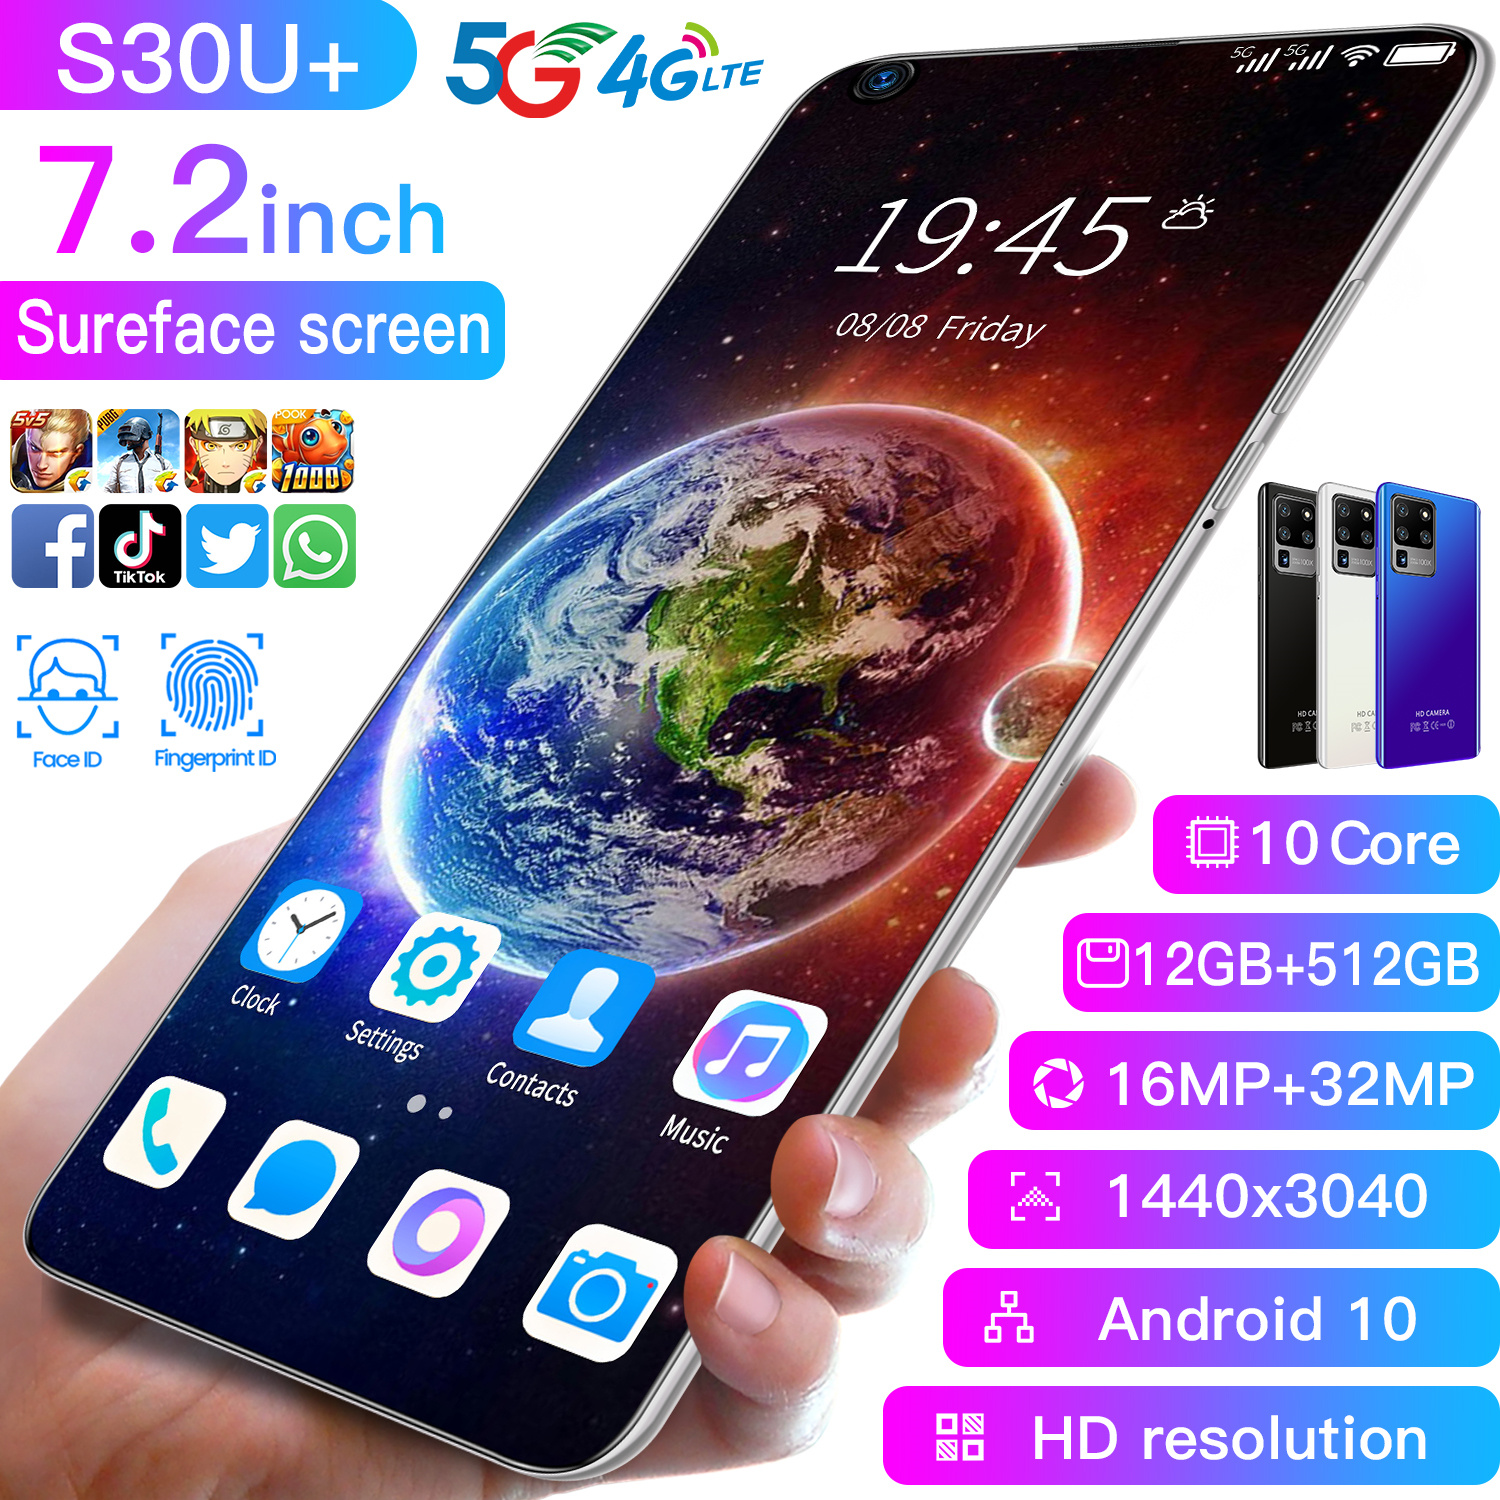 โทรศัพท์มือถือ Sansumg S30u Plus 7.2นิ้ว 12G+512G Full HD กล้องหน้า 24MPกล้องหลัง 48MP แบตฯอึด 4,800mAh ปลดล็อกด้วยใบหน้า ใช้แอพธนาคารได้